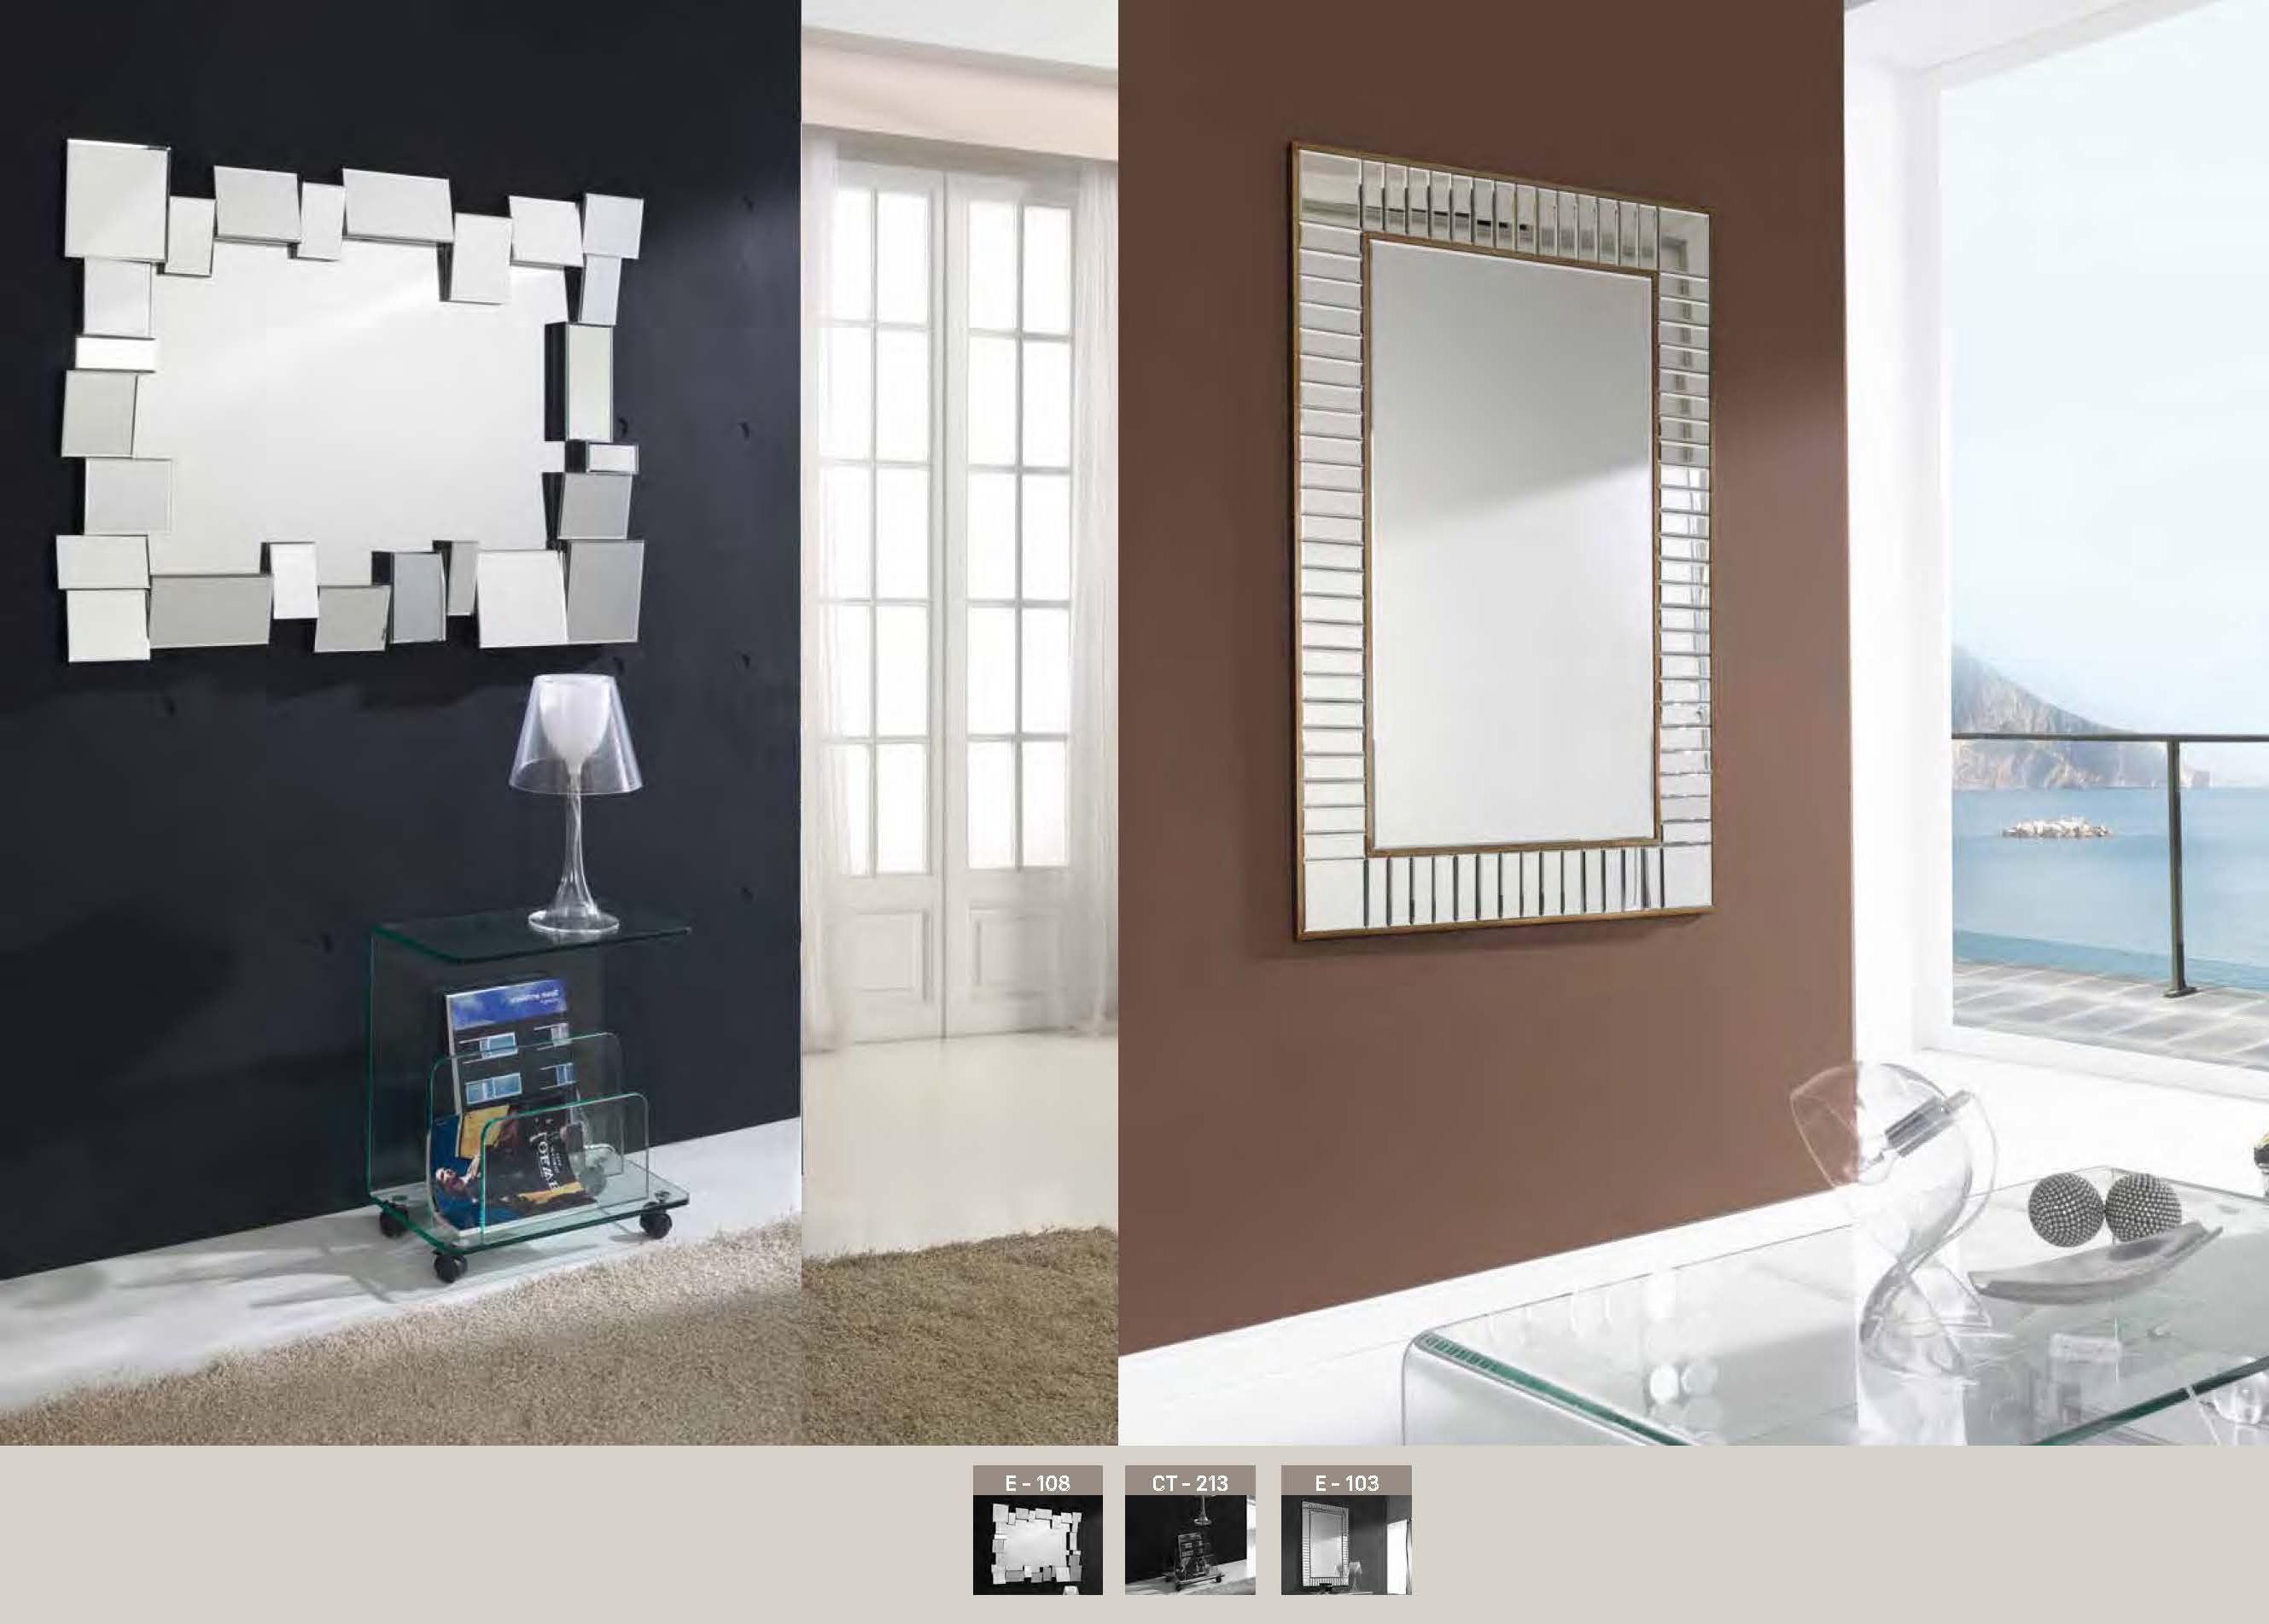 Brands Arredoclassic Living Room, Italy E-108, CT-213, E-103